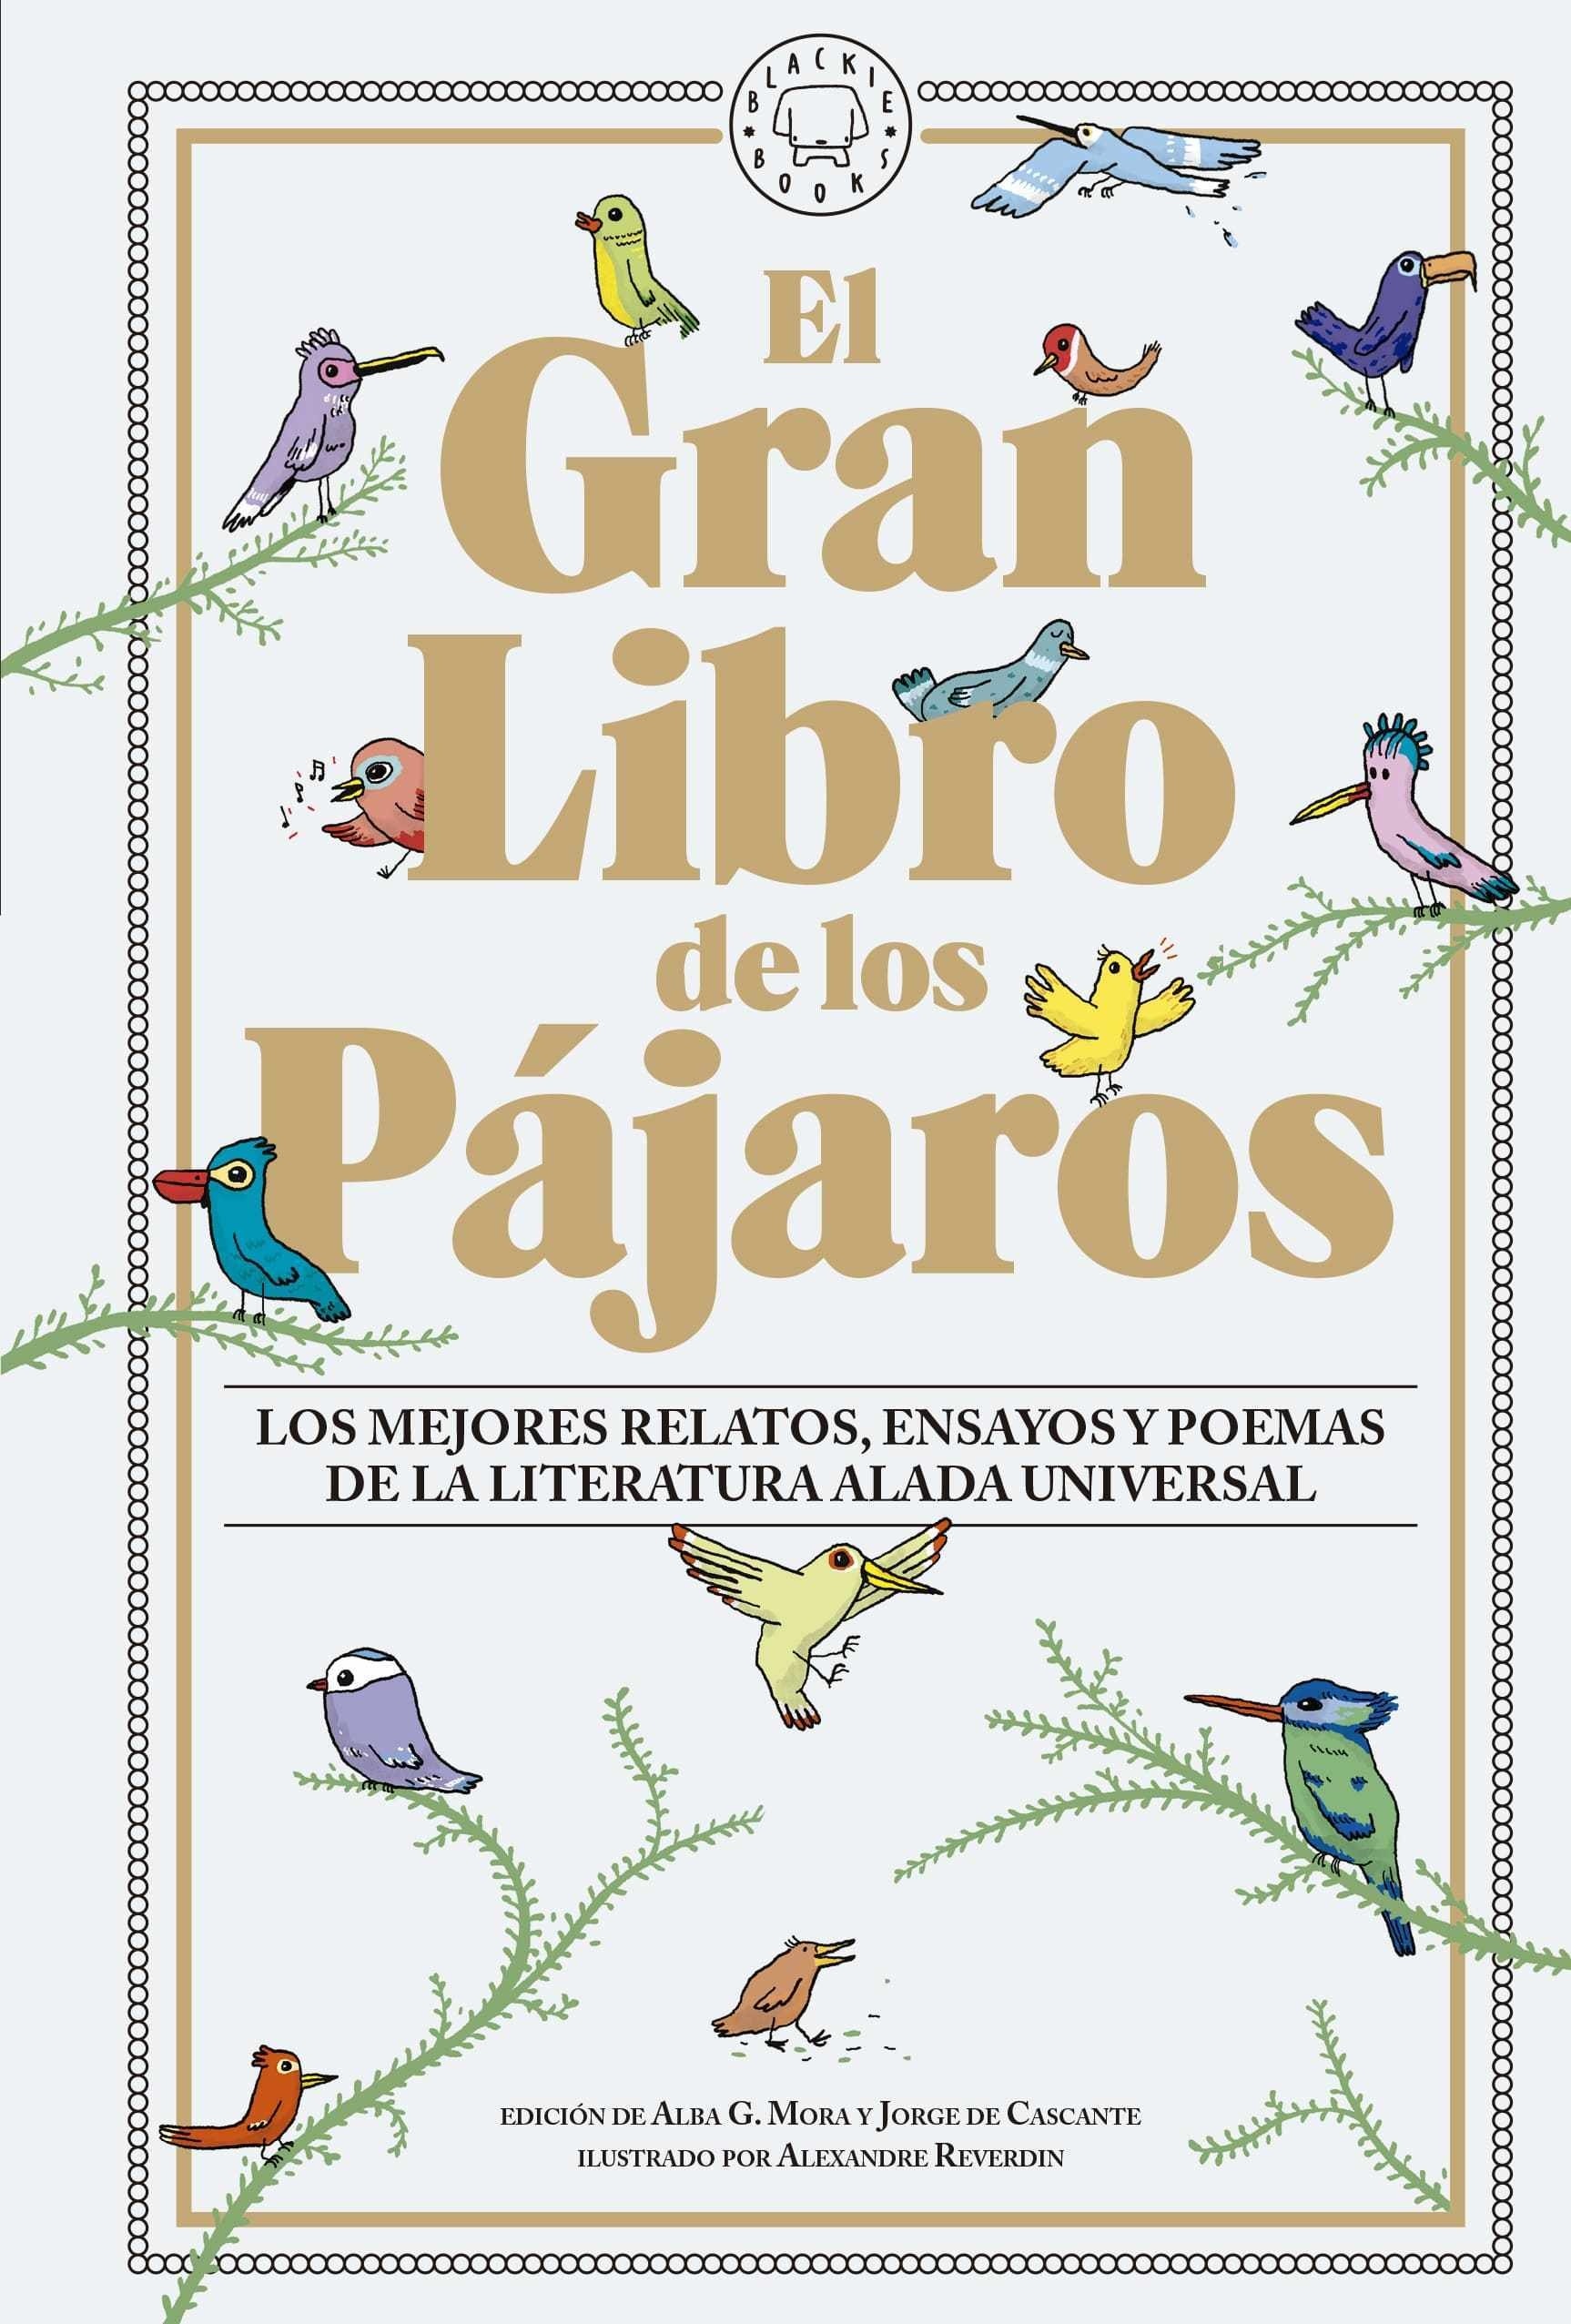 Gran Libro de los Pájaros, El "Los mejores relatos, ensayos y poemas de la literatura alada universal". 